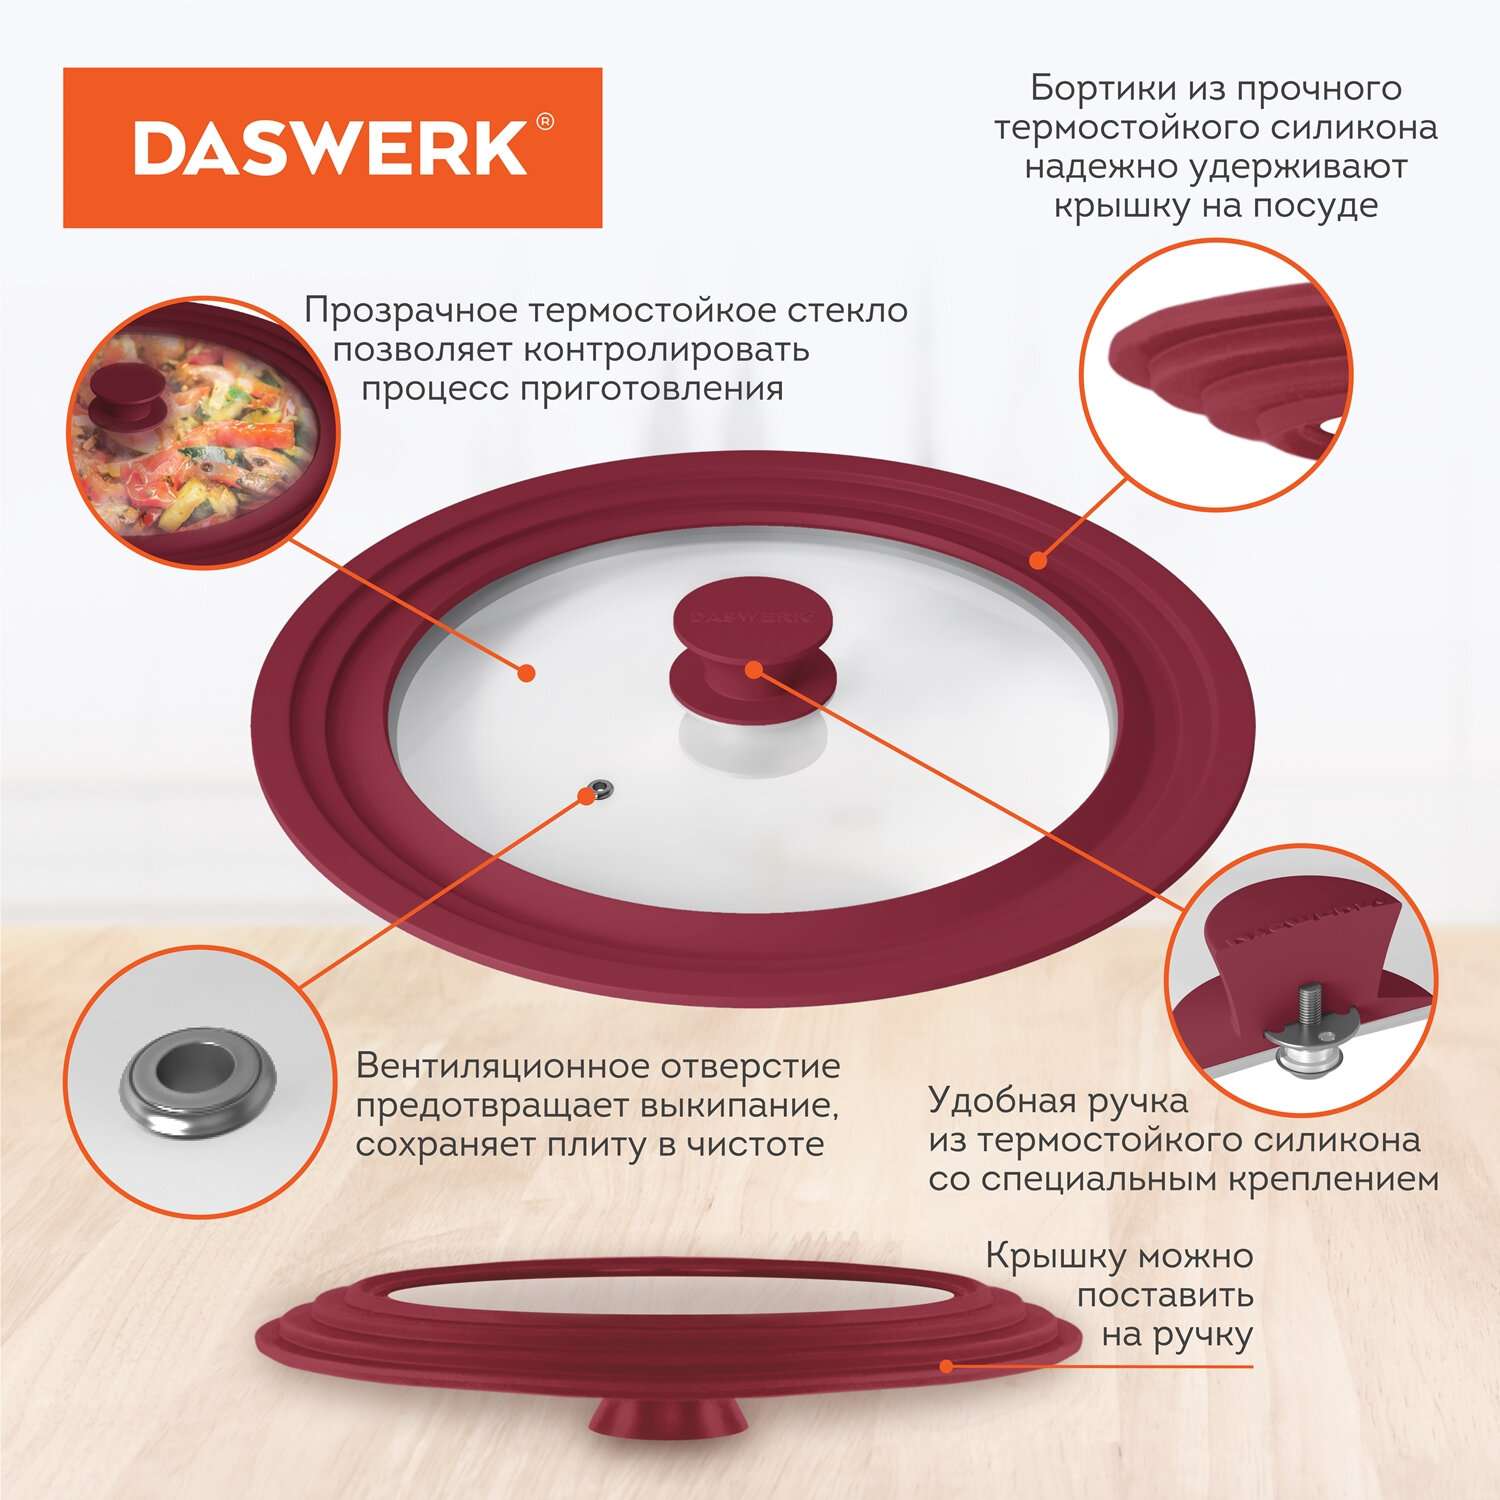 Крышка для сковороды DASWERK кастрюли посуды универсальная 3 размера 22-24-26см - фото 3